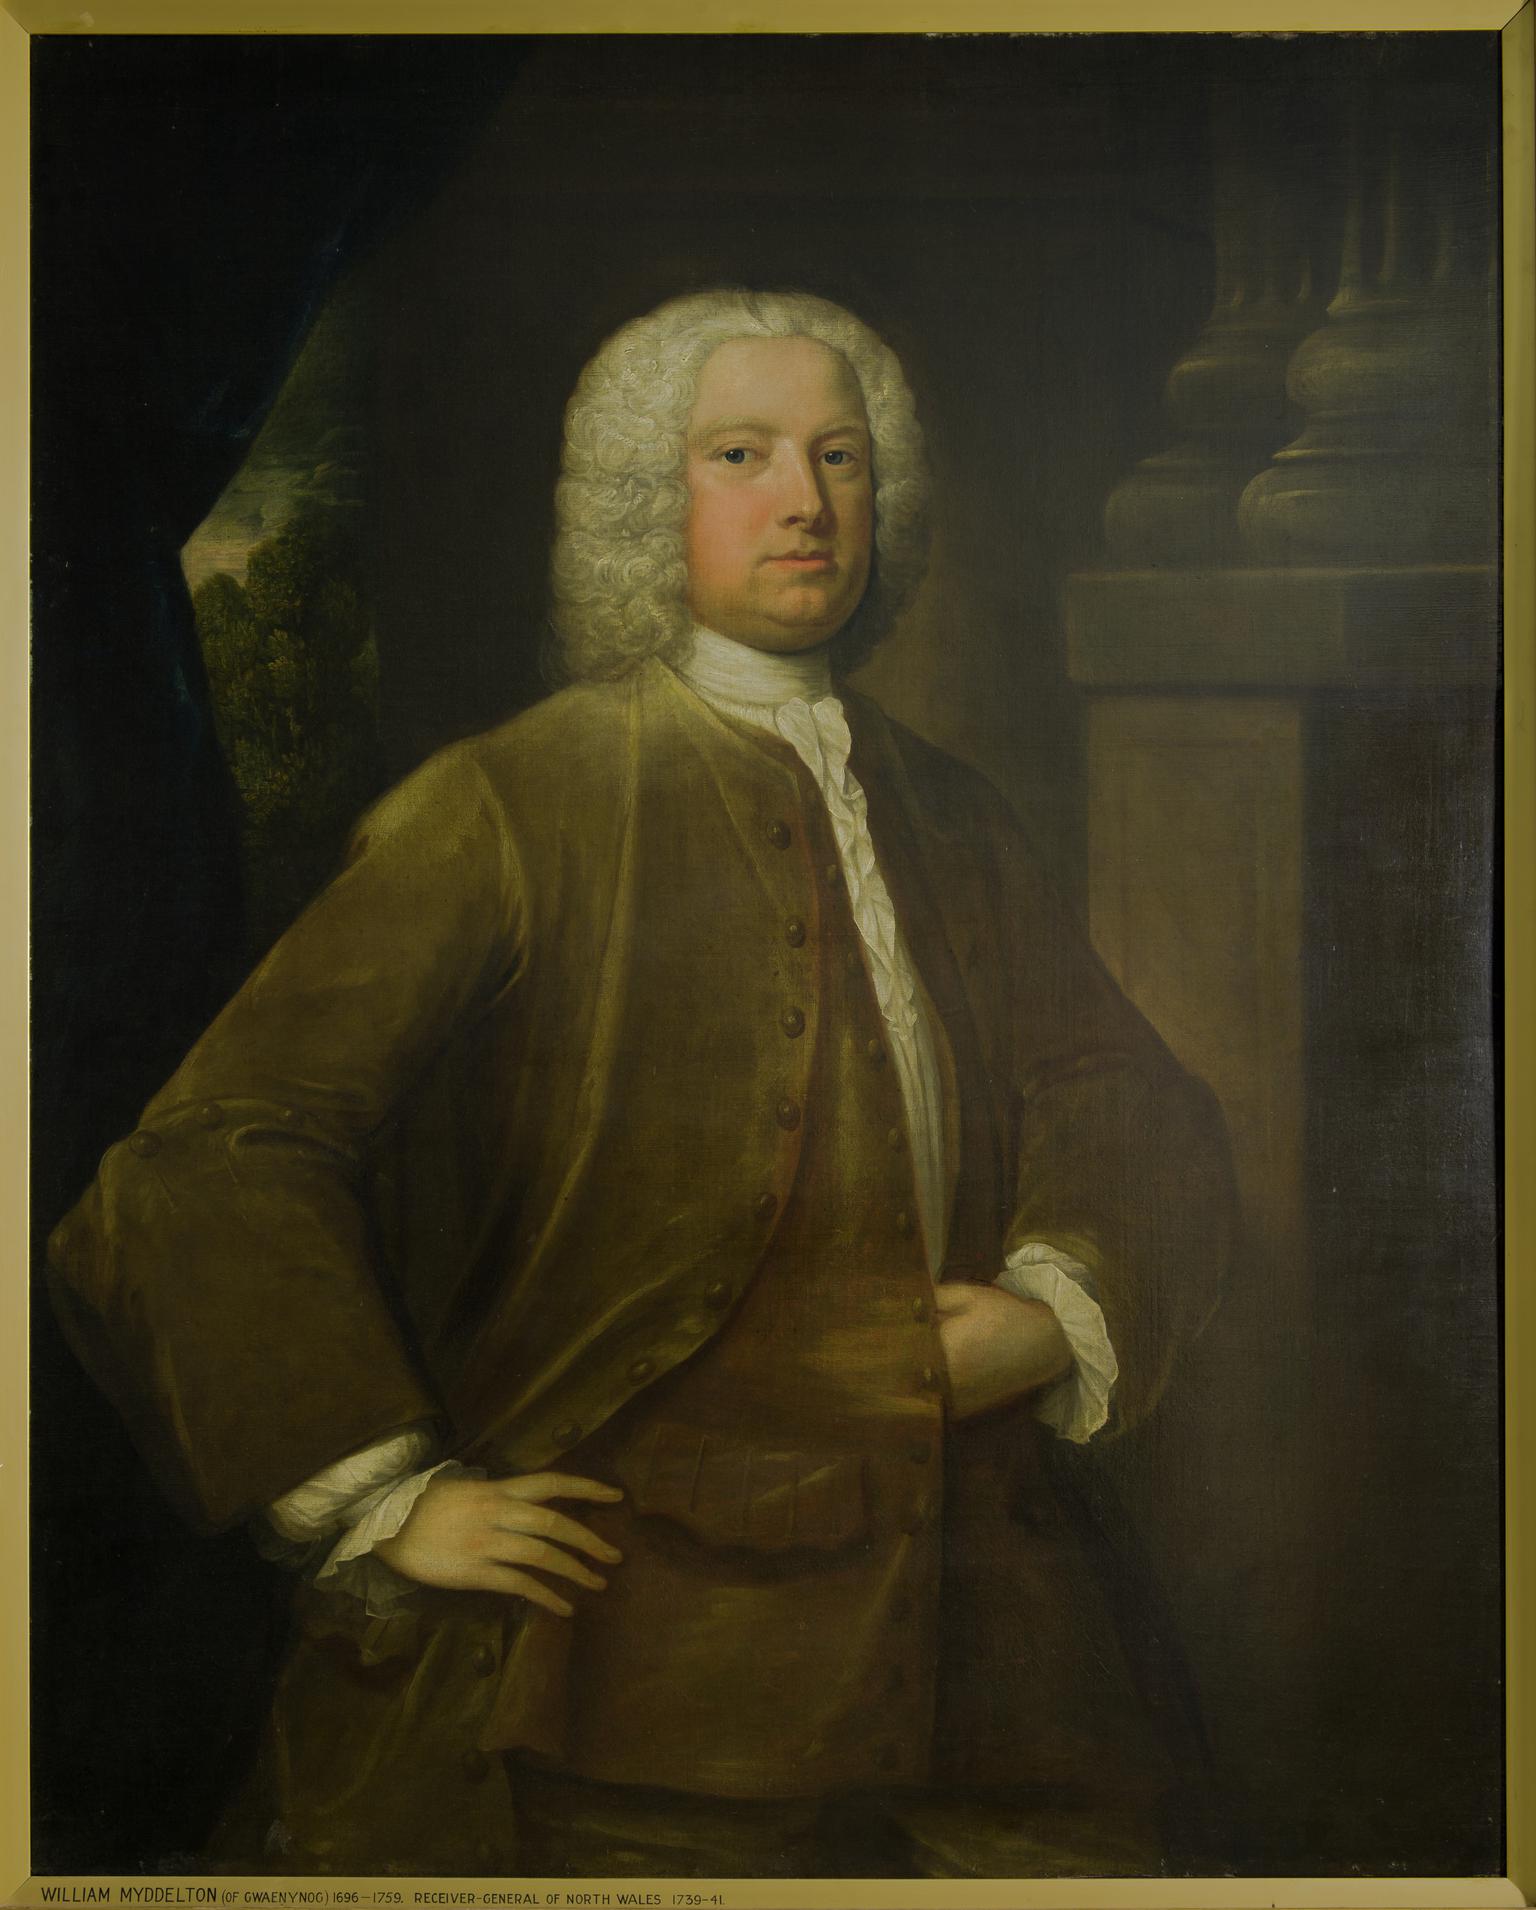 William Myddelton of Gwaenynog (1696-1759)